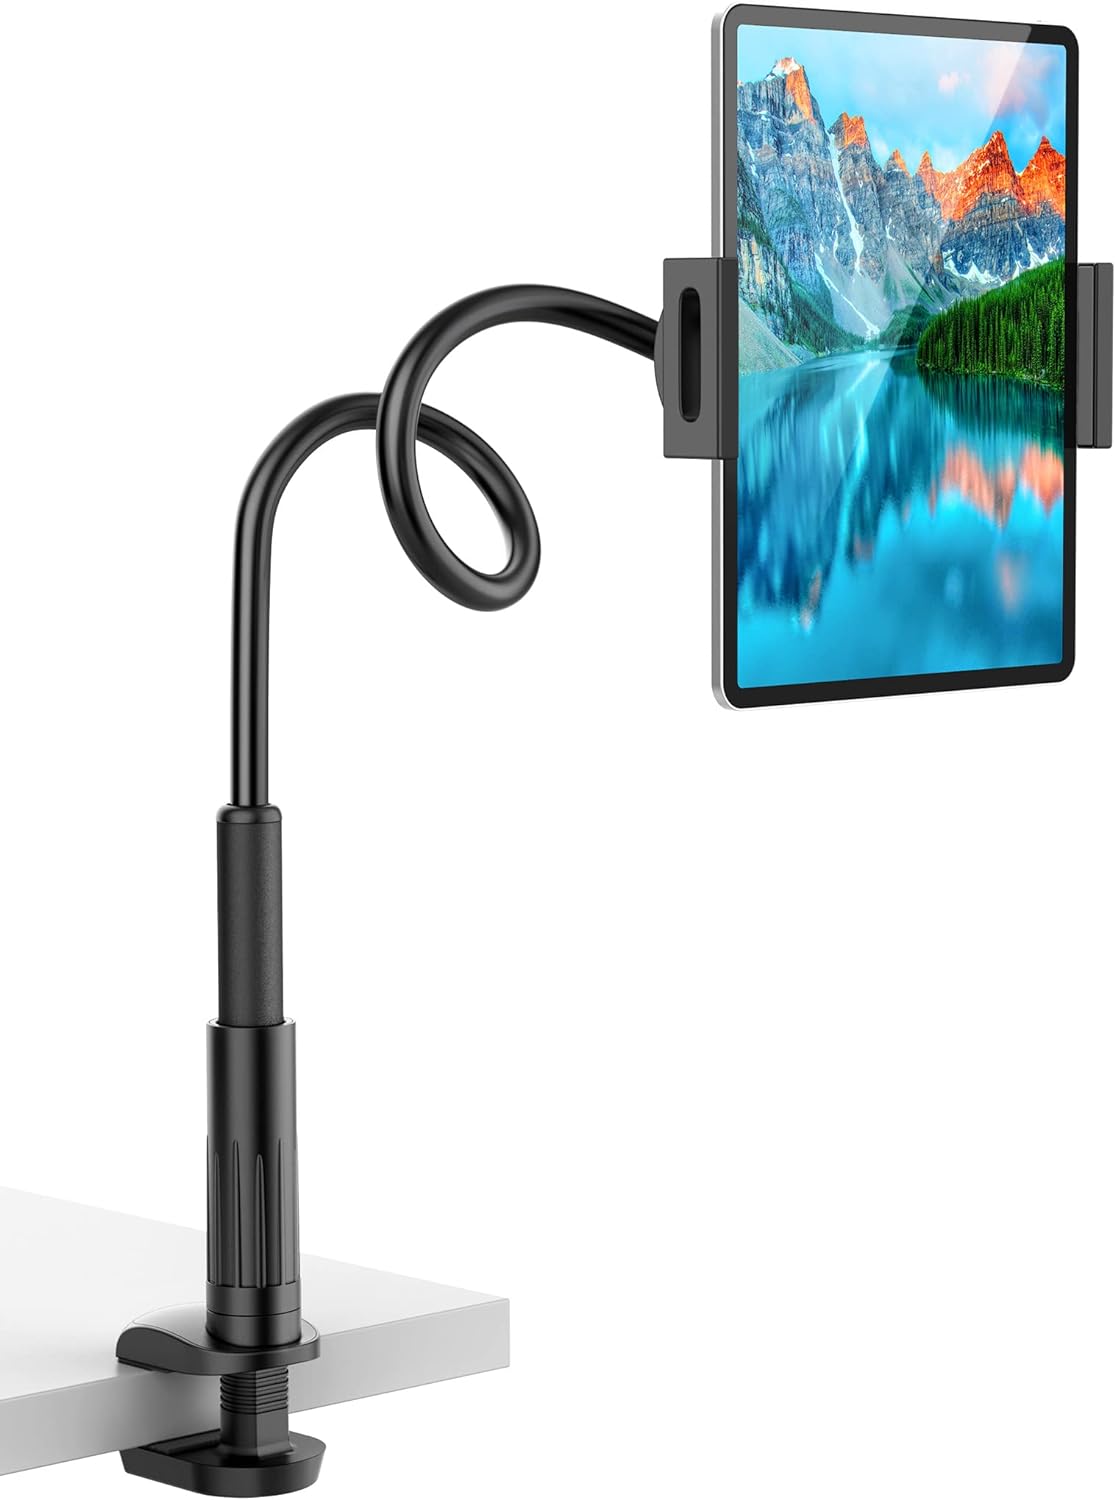 VIVI MAO タブレットスタンドホルダー ベッド用 グースネックマウント 調節可能なフレキシブルアーム付き iPad Air Pro Mini/Samsung Tab/Nintendo Switch Kindle その他 4.7インチ～12.9インチデバイスに対応 タブレット アクセサリ スタンド ブラック